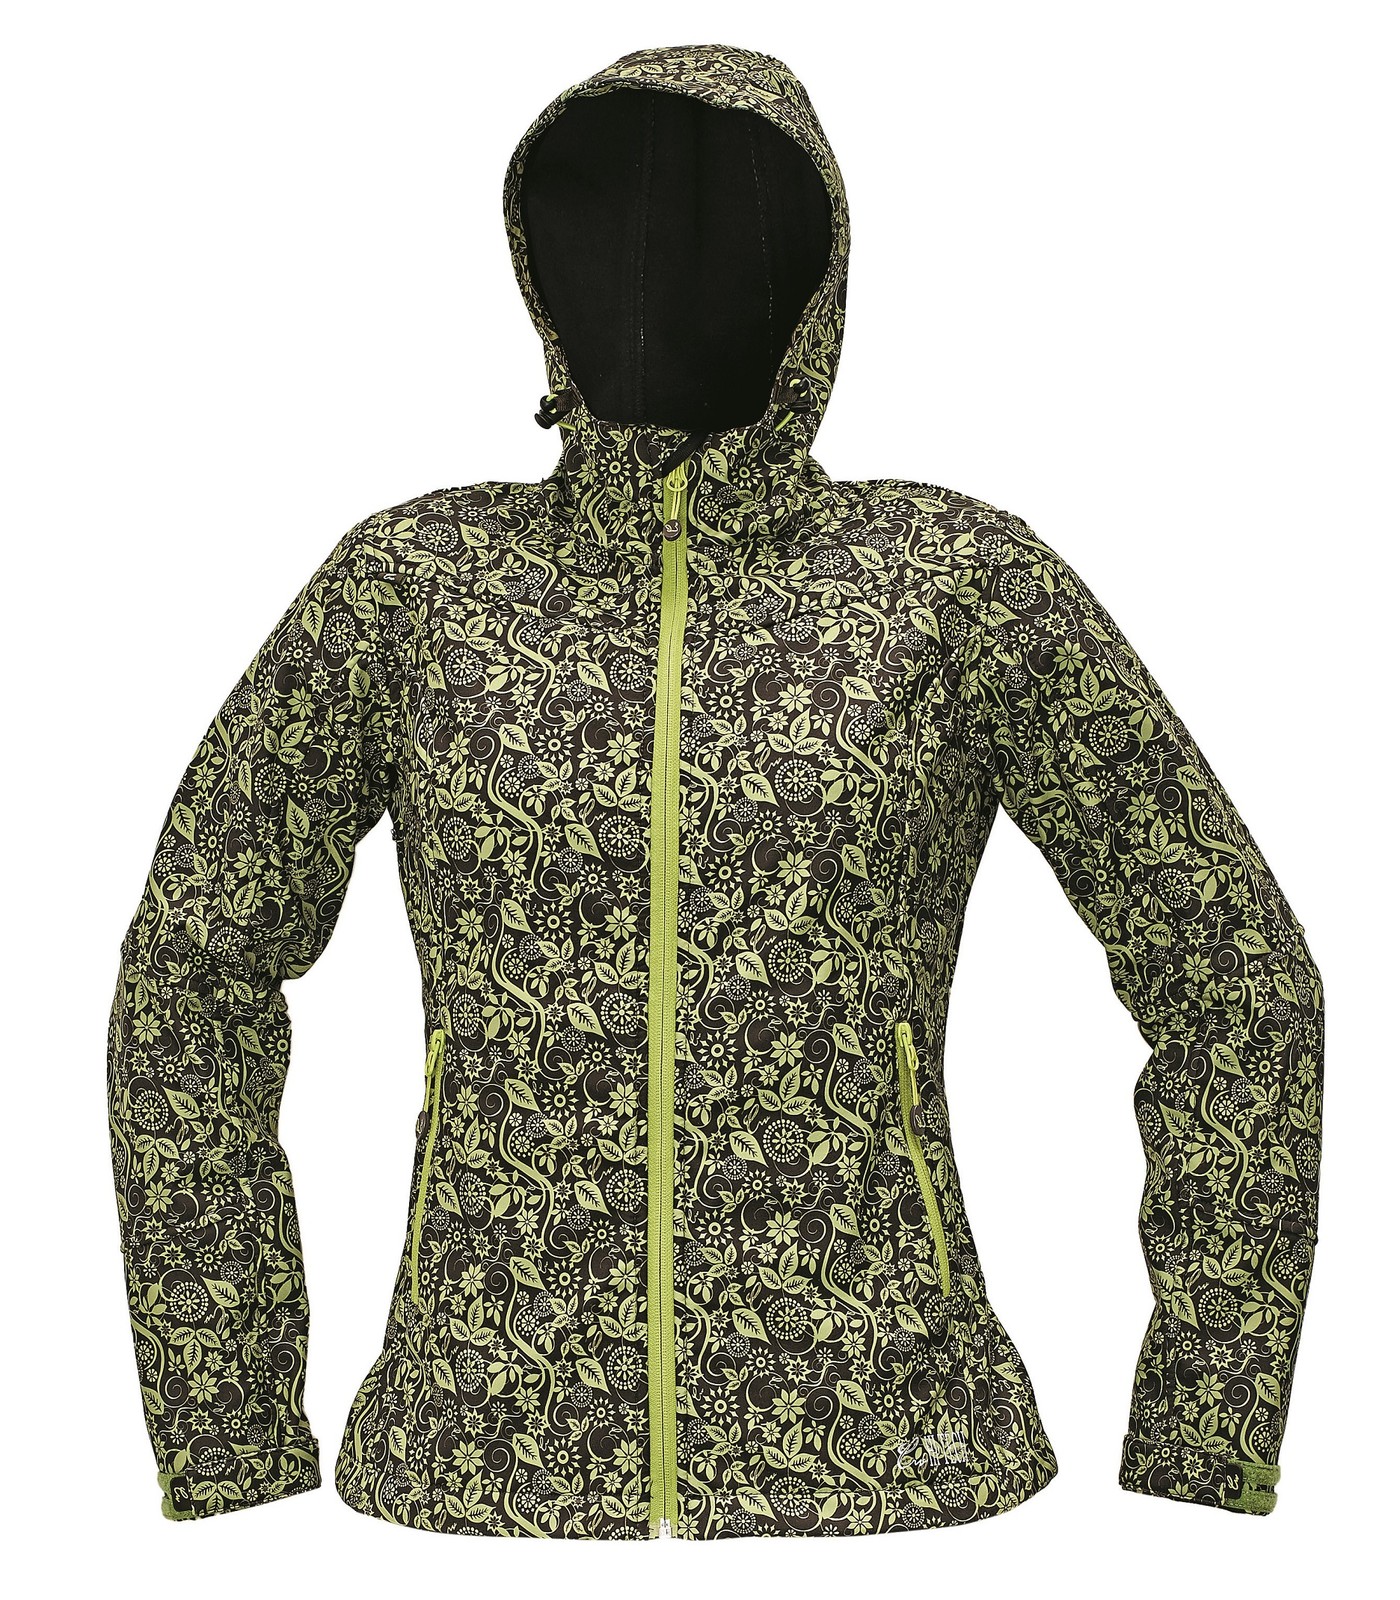 Softshellová bunda Yowie Flower dámska - veľkosť: M, farba: hnedá/zelená